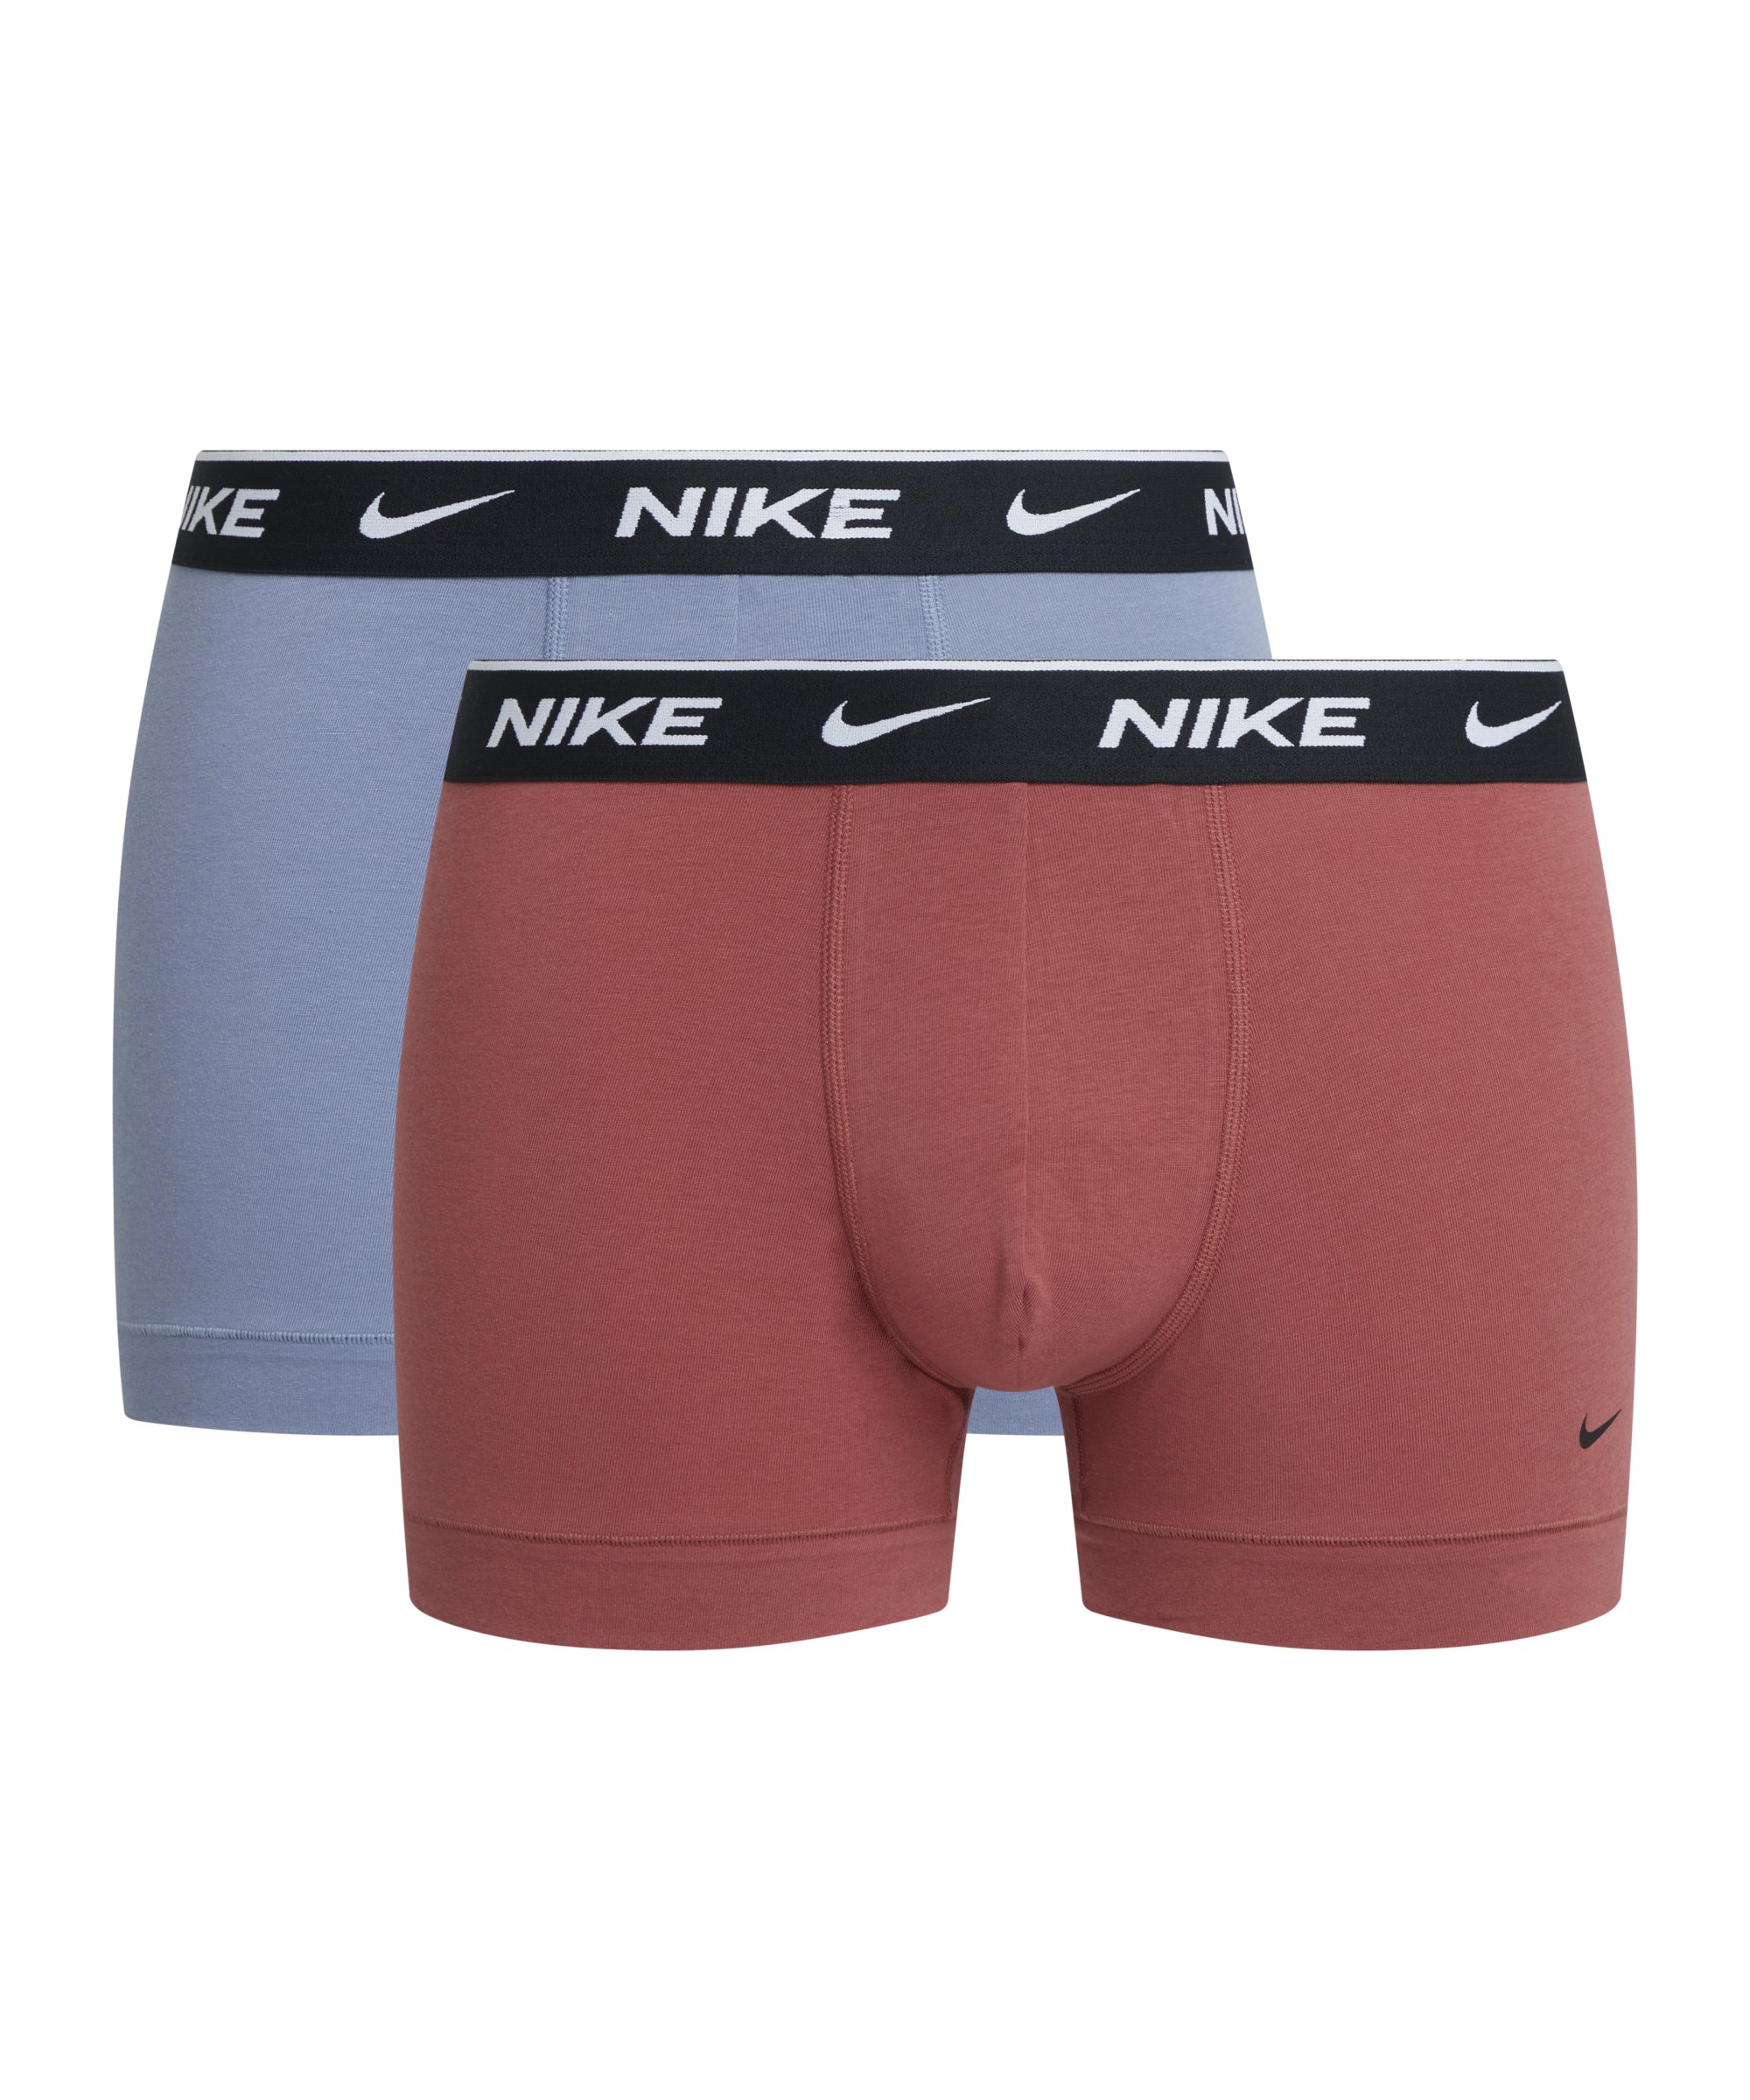 Nike Cotton Trunk Boxershort 2er Pack F5I6 - braun